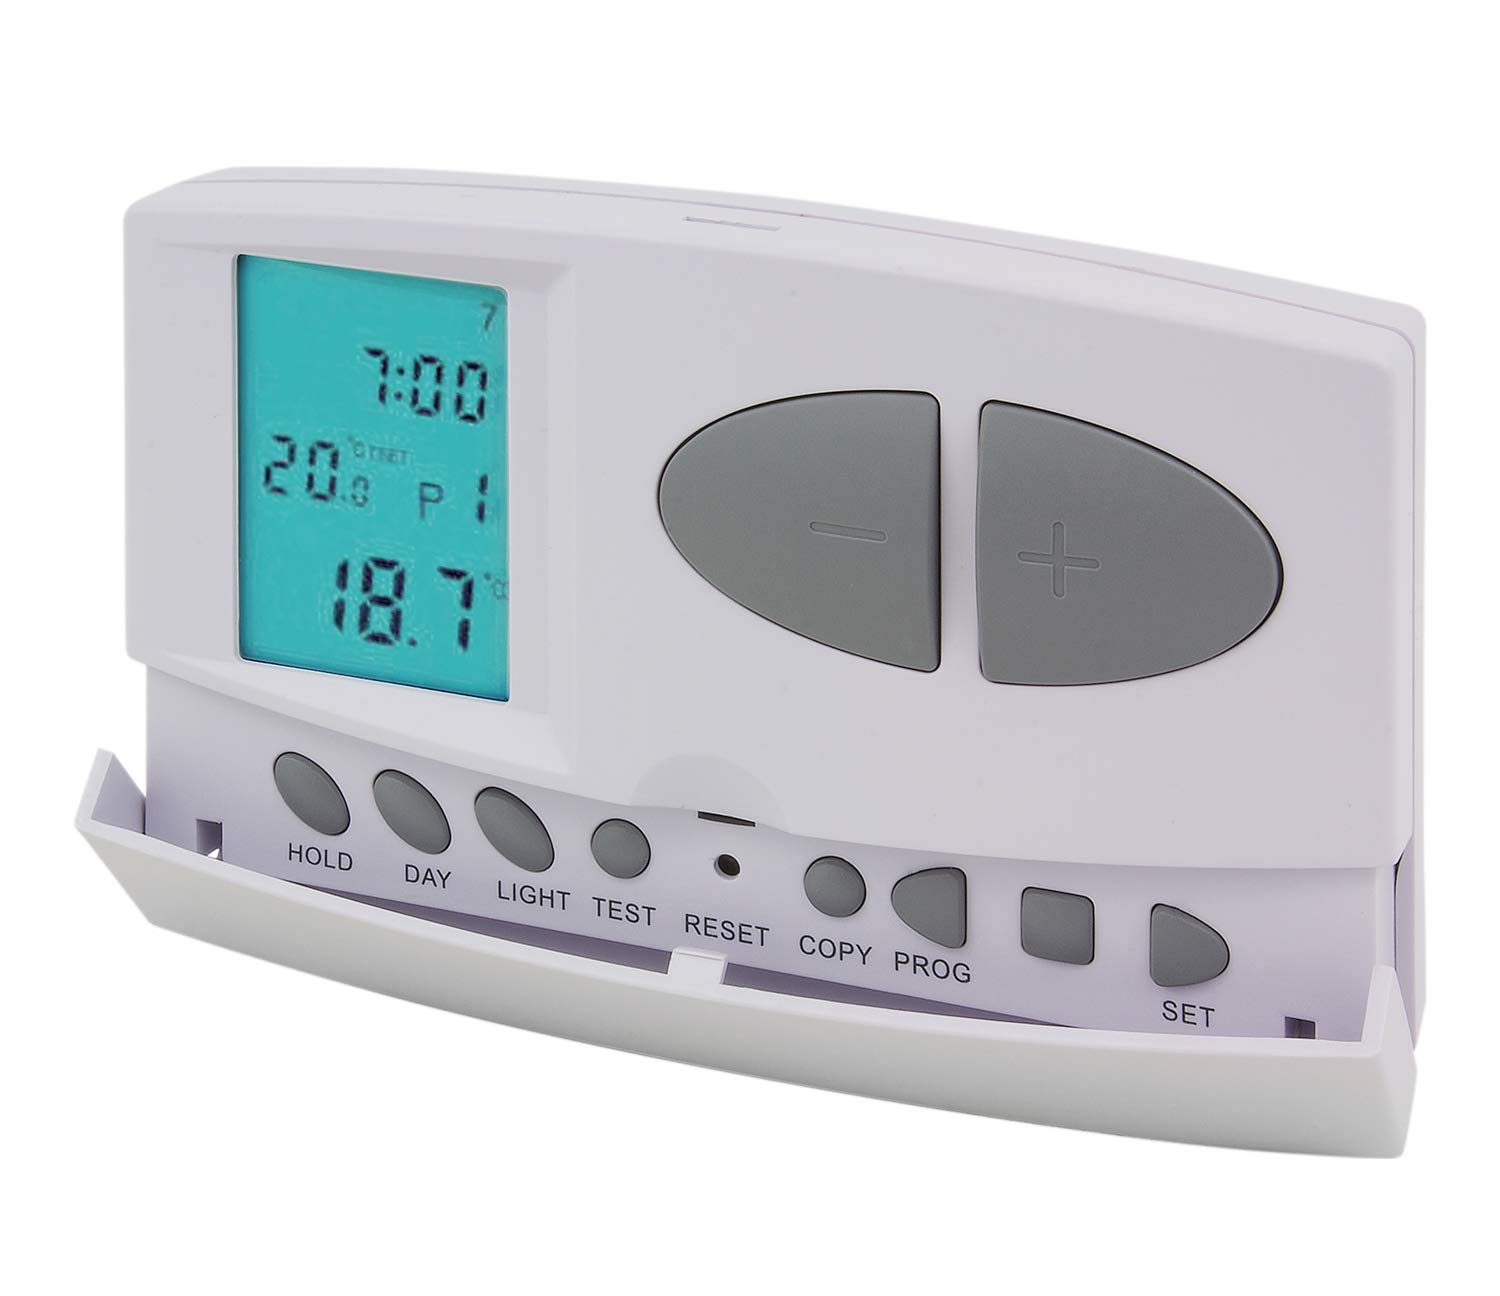 POLY POOL - PP1465 Digitaler Chrono-Thermostat EASY Sommer/Winter - Raumthermostat mit täglicher/wöchentlicher Programmierung - Thermostat mit 6 Intervallen